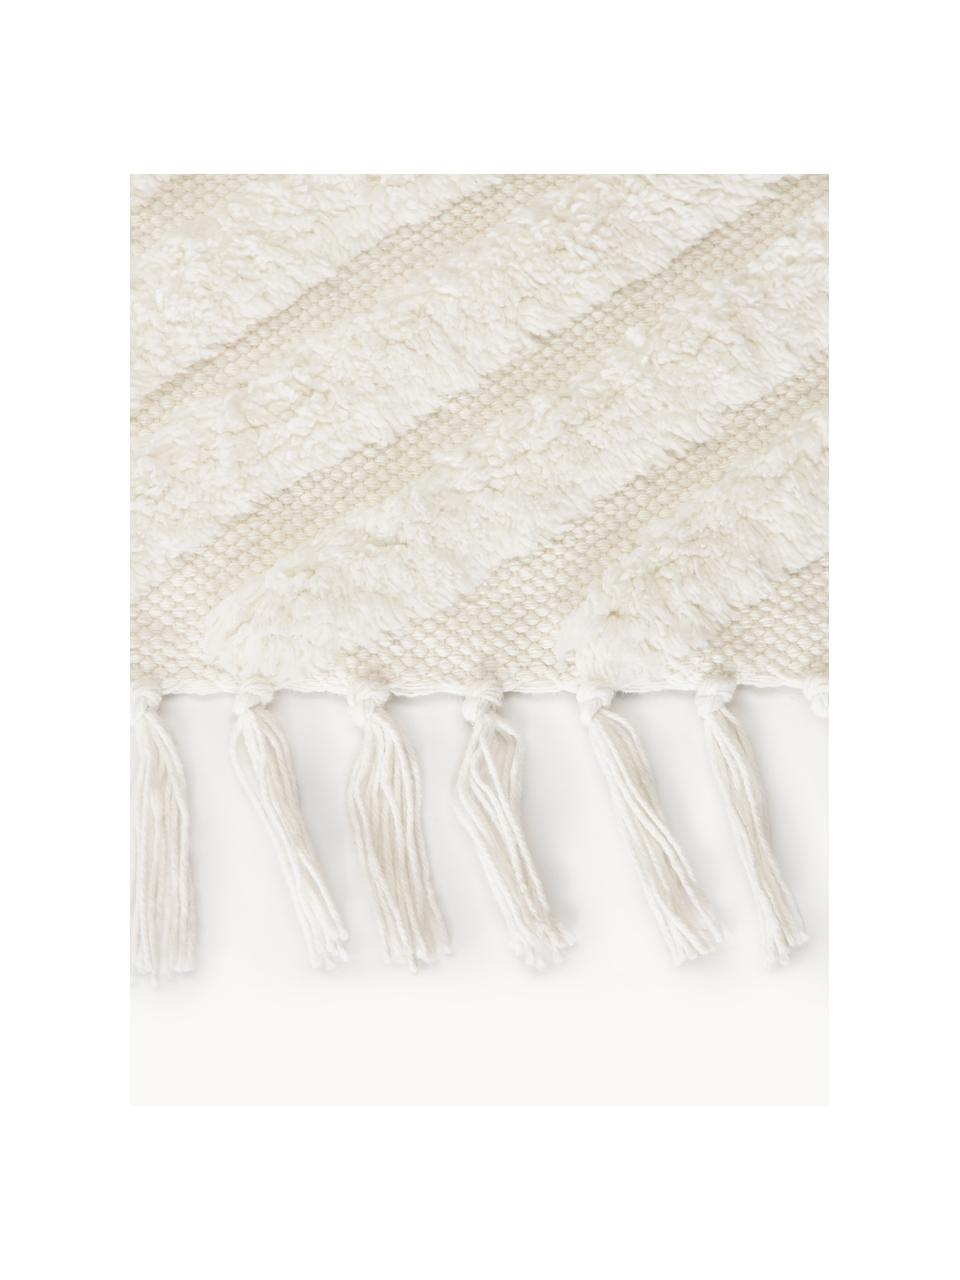 Ručně tkaný bavlněný běhoun s vystouplým vzorem Ziggy, 100 % bavlna, Krémově bílá, Š 80 cm, D 200 cm